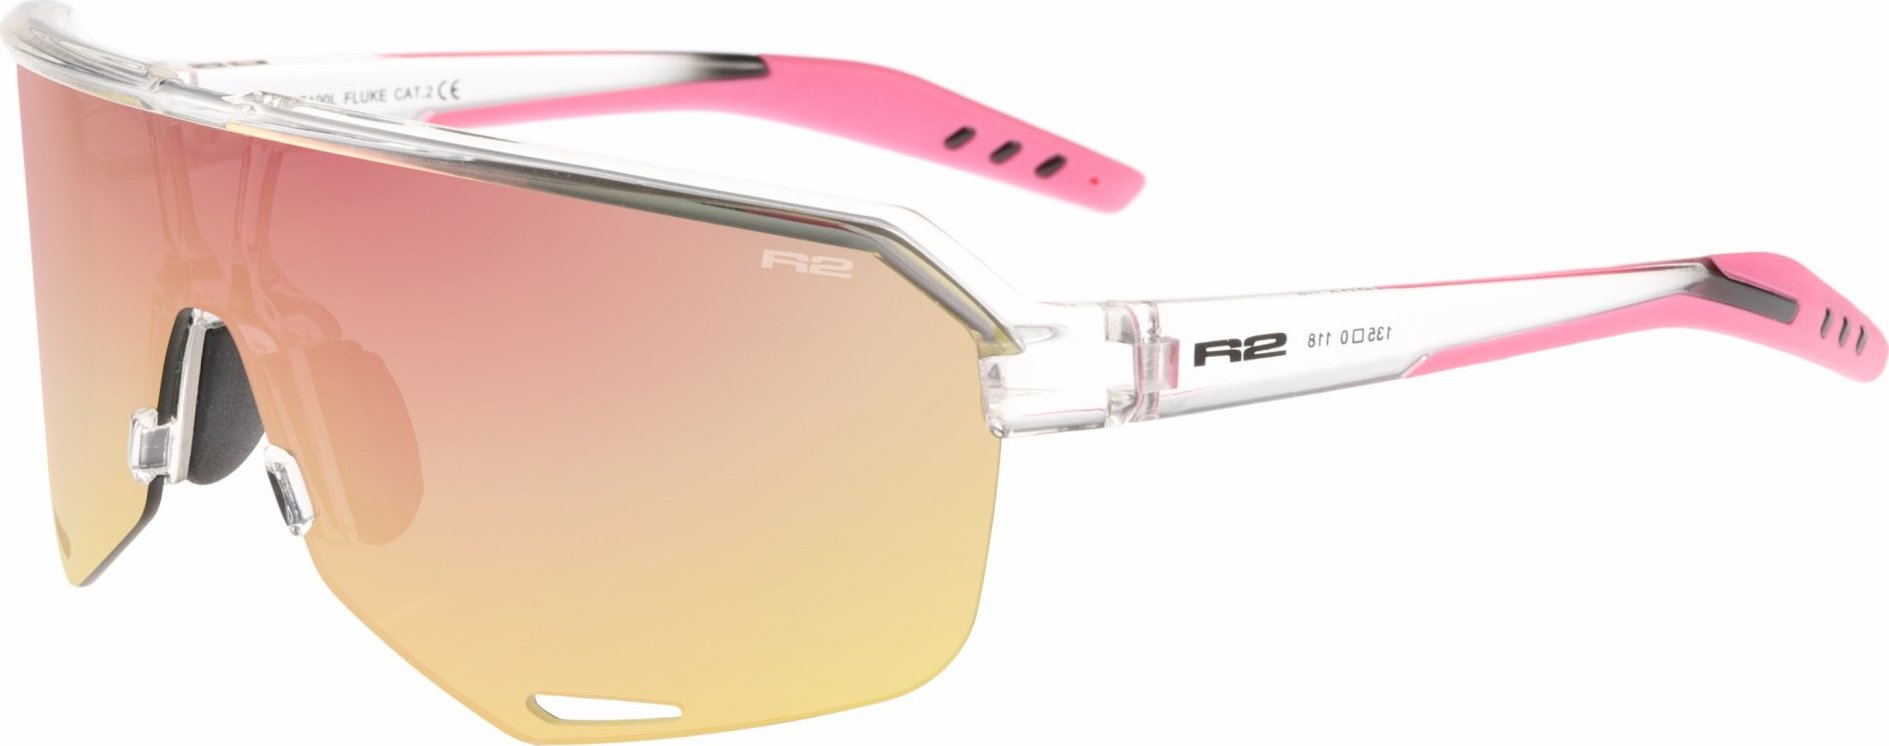 Sportovní sluneční brýle R2 Fluke růžové